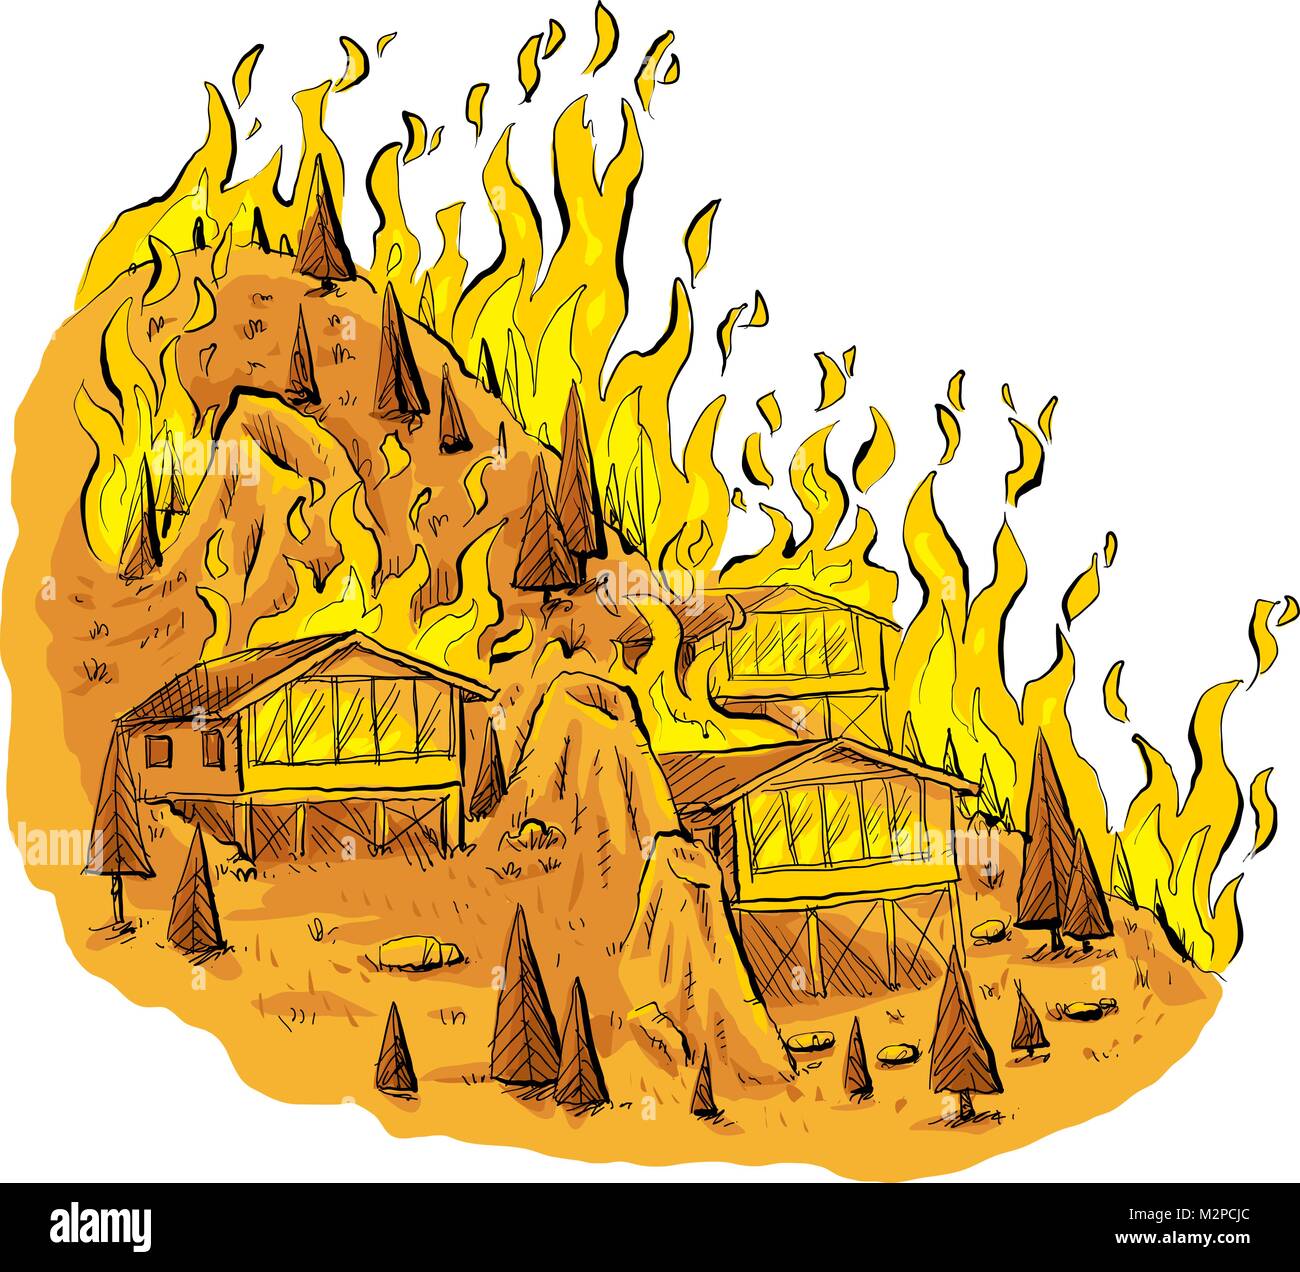 una-caricatura-de-un-resplandeciente-furioso-incendio-forestal-a-traves-de-arboles-y-casas-sobre-una-colina-rocosa-m2pcjc.jpg